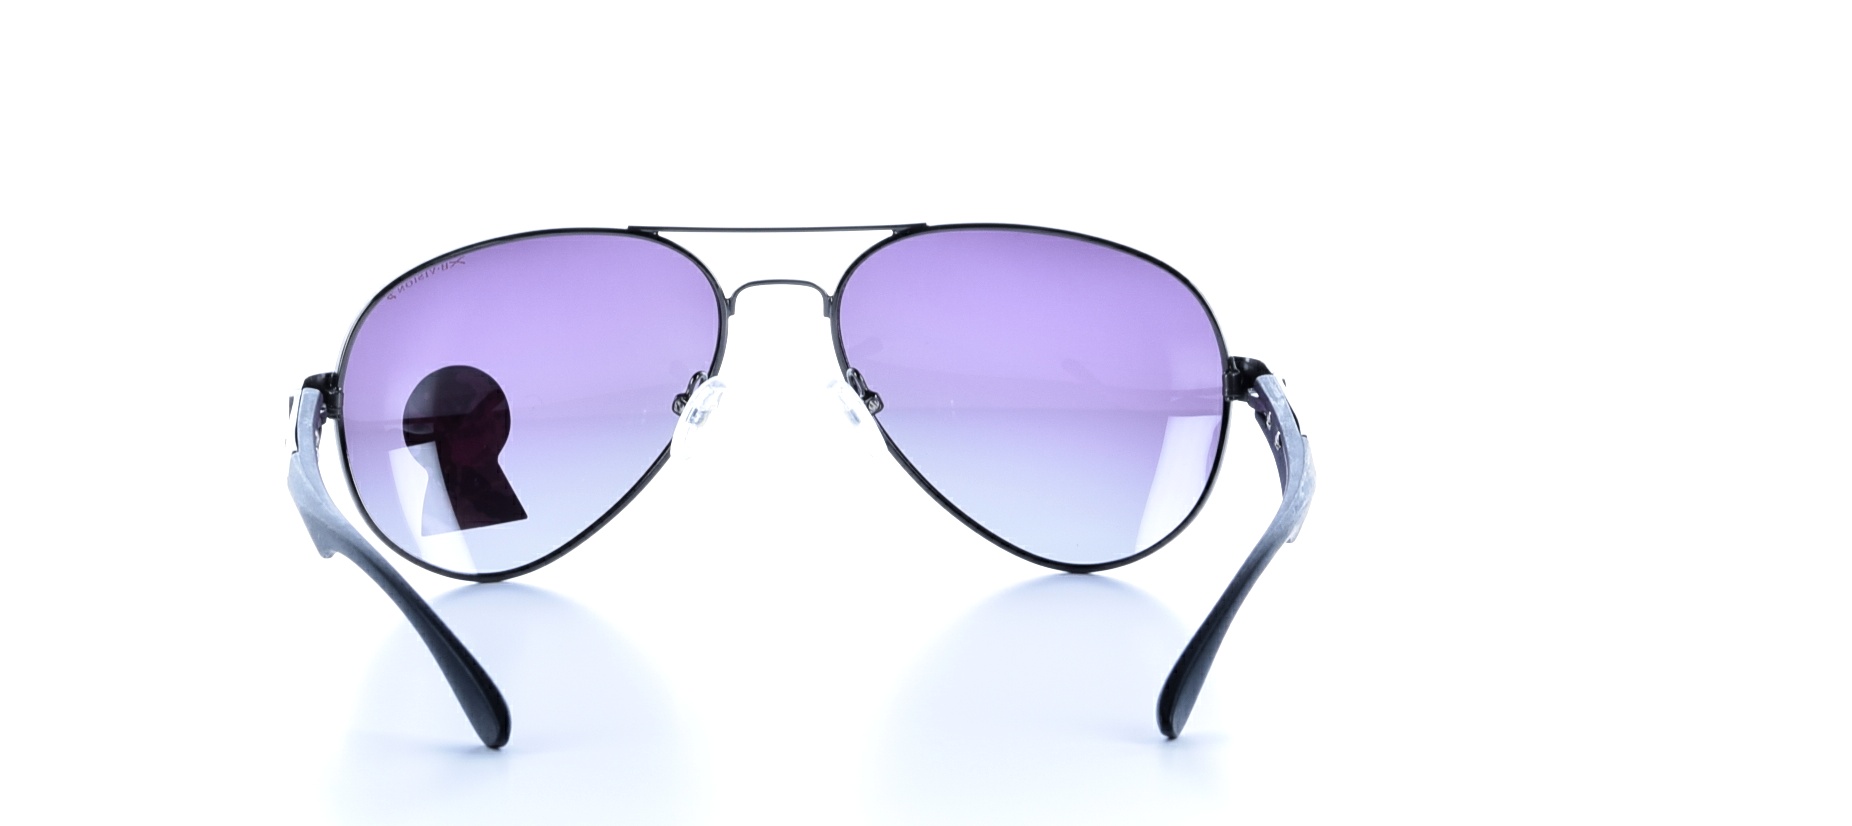 Rama ochelari soare X8-Vision